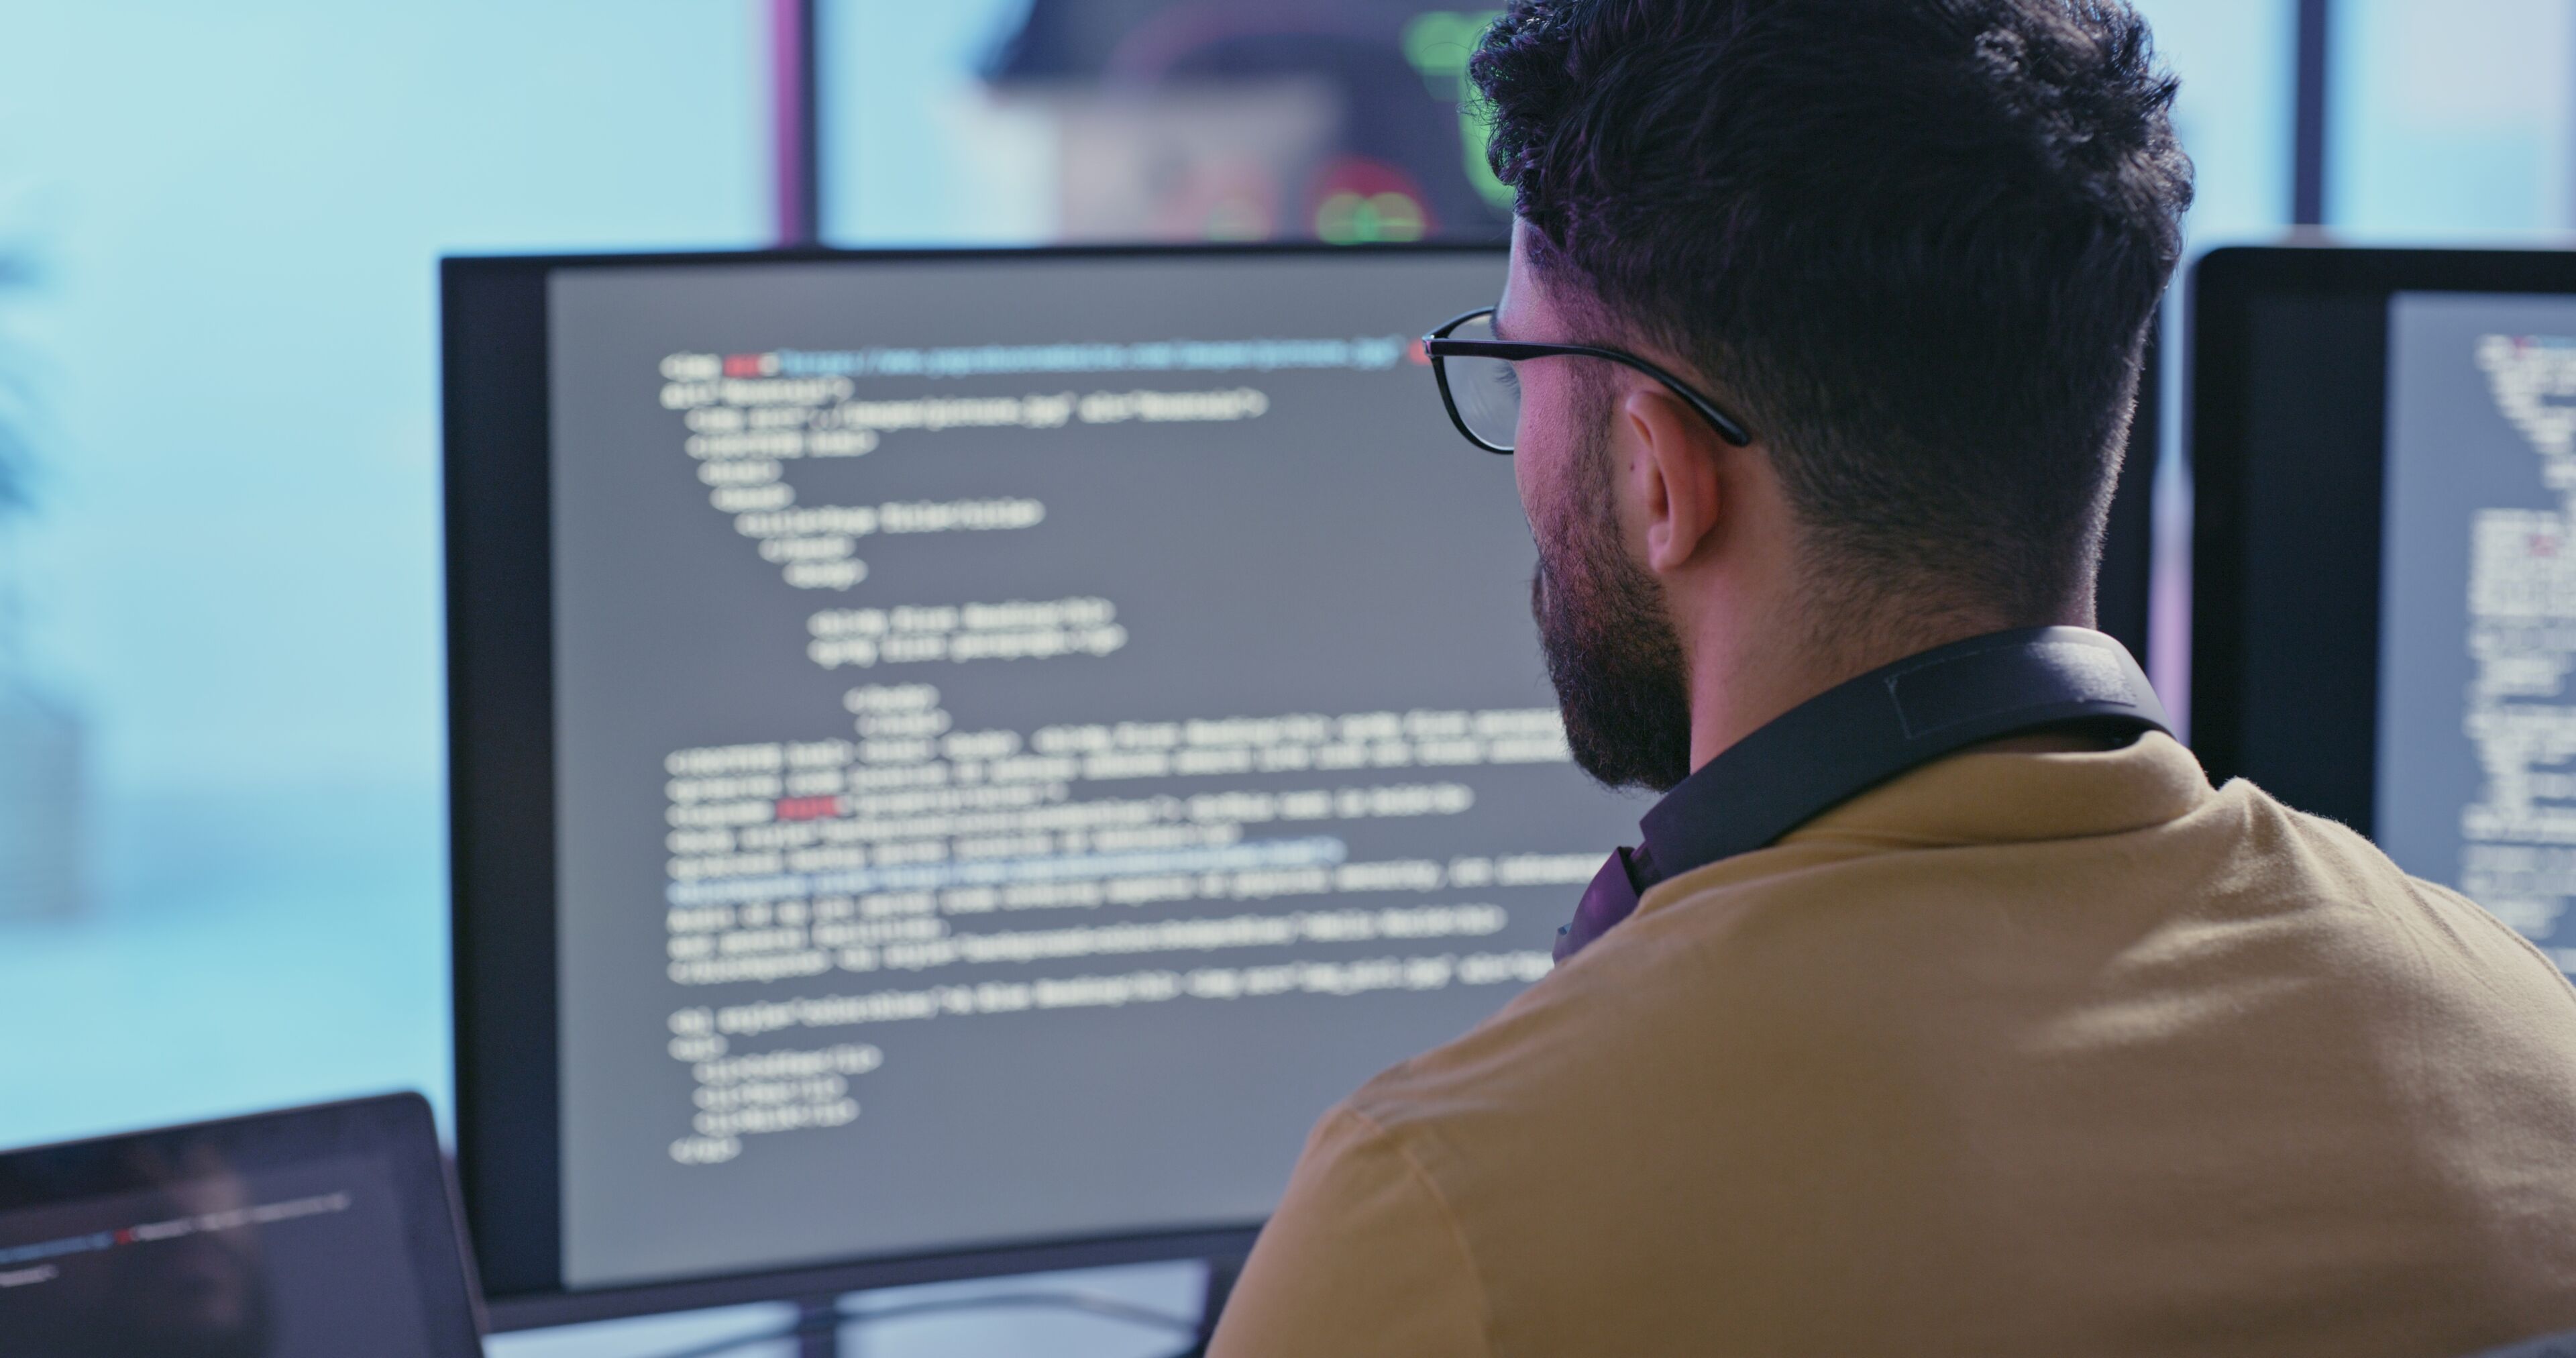 Un programmeur se concentre intensément sur le code sur des écrans doubles dans un environnement technologique moderne.